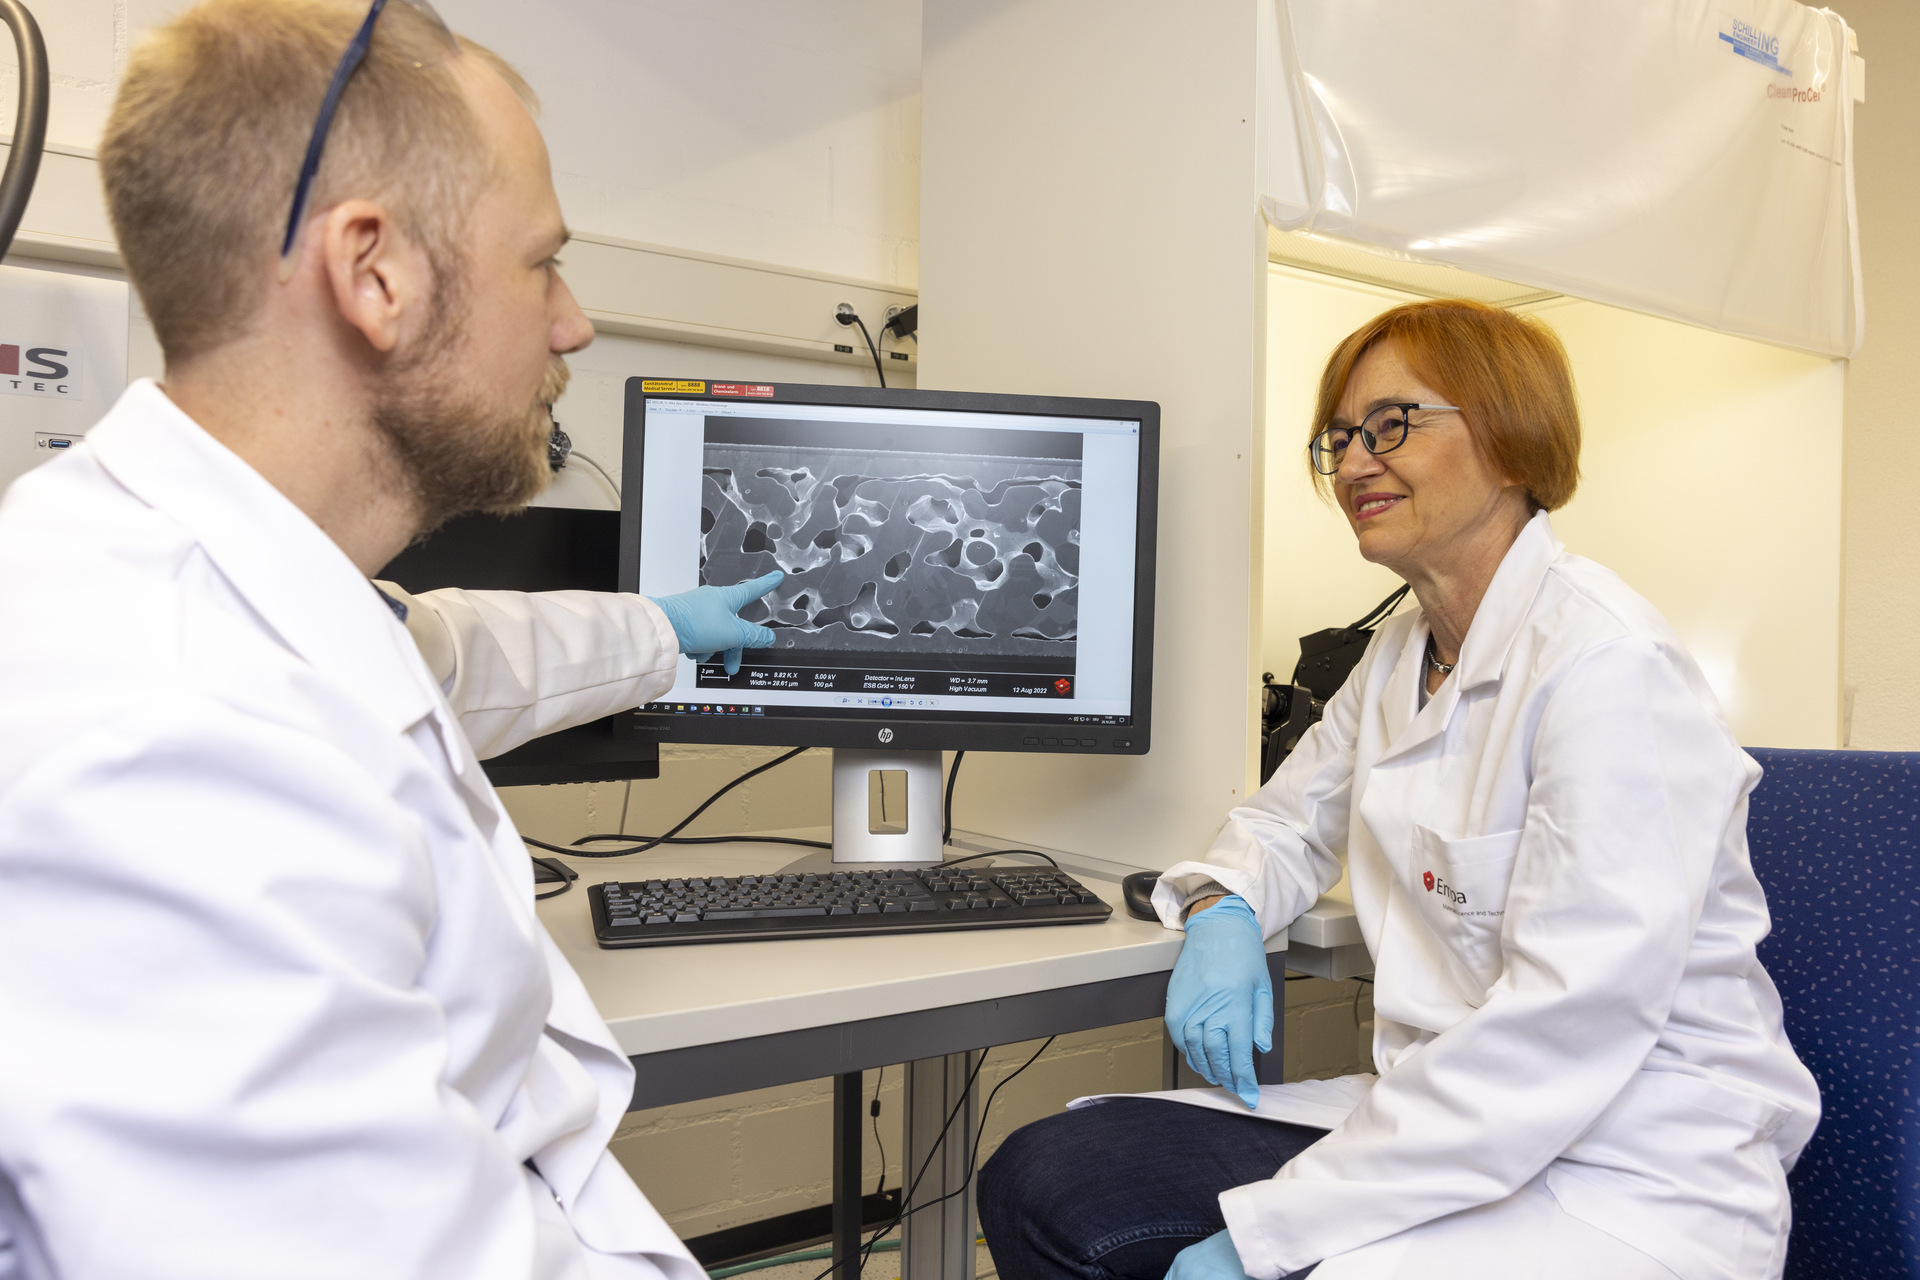 Nanorészecskék: a svájci EMPA laboratóriumaiban Jolanta Janczak-Rusch és Bastian Rheingans az innovatív nano-illesztési eljárással előállított kötés mikroszkópos felvételének eredményéről beszél.